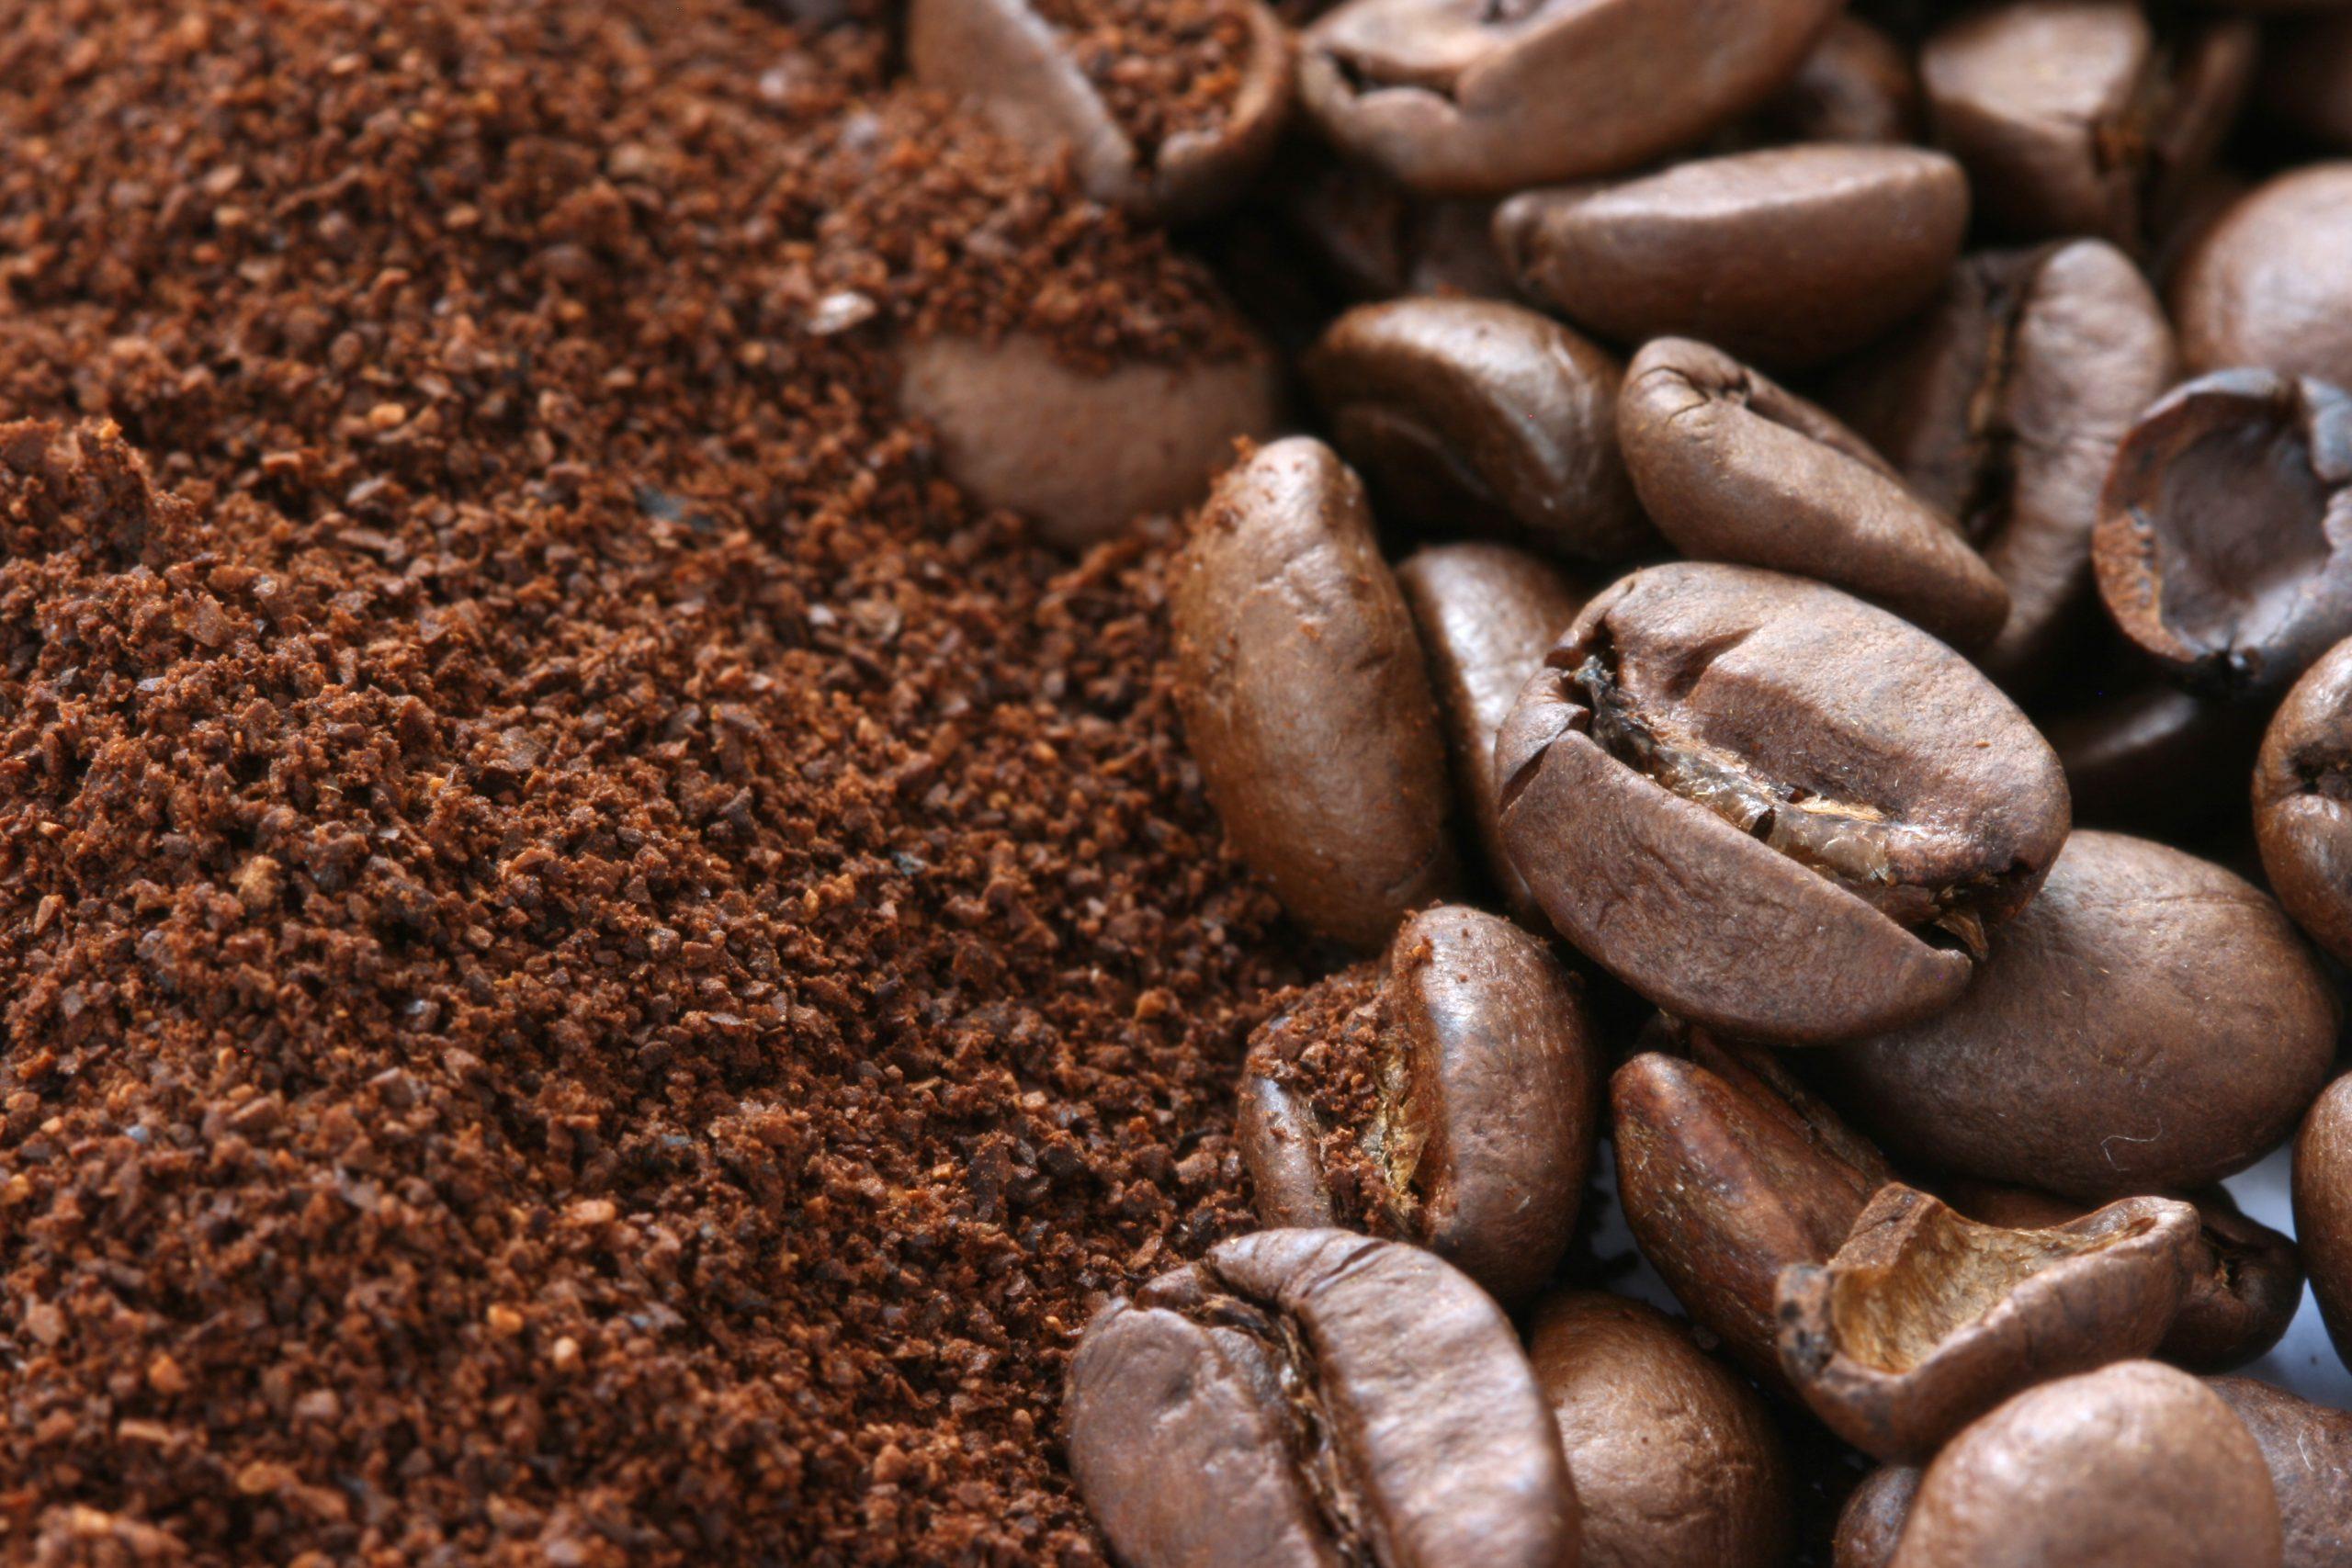 Colombia Pitalito Caturra Ground Coffee